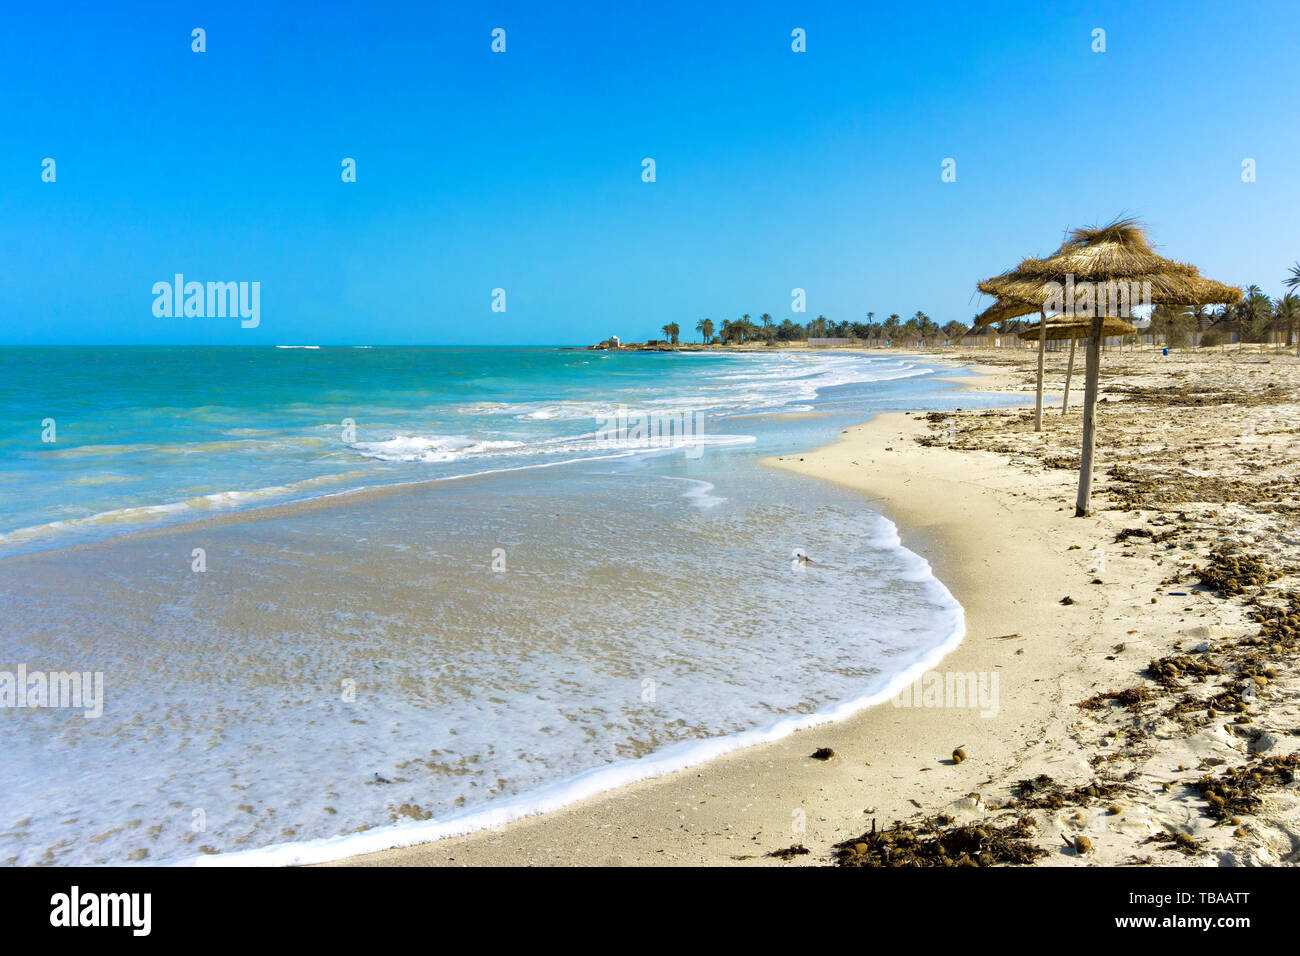 Vue de la zone touristique de plages sur la côte Méditerranéenne, Djerba, Tunisie Banque D'Images